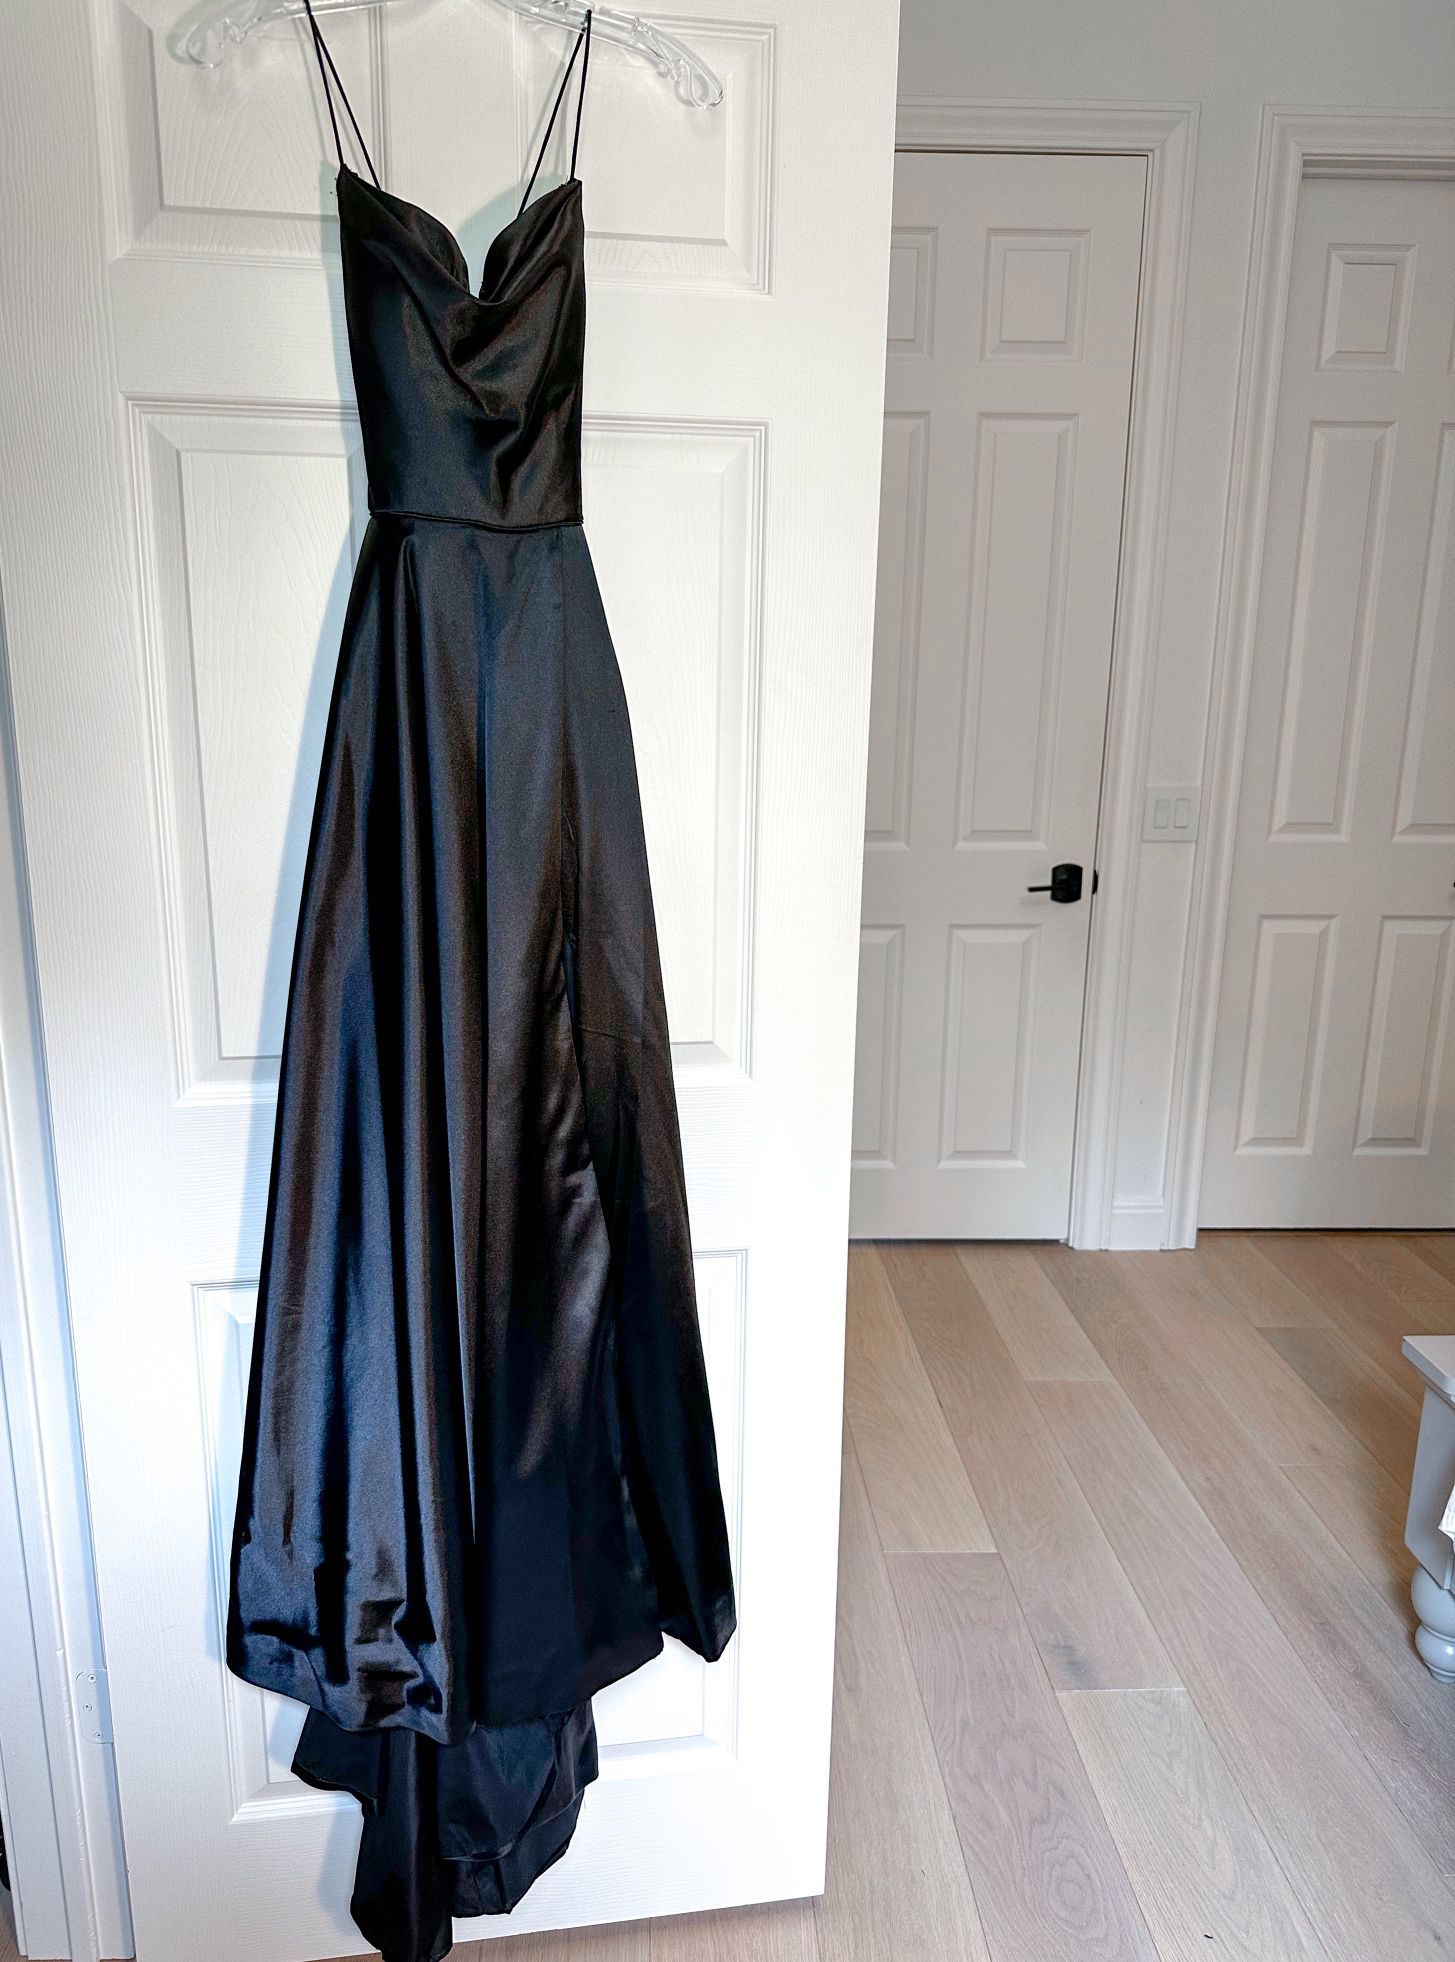 Sherri Hill Black Satin A-Line Prom Dress (size 0)